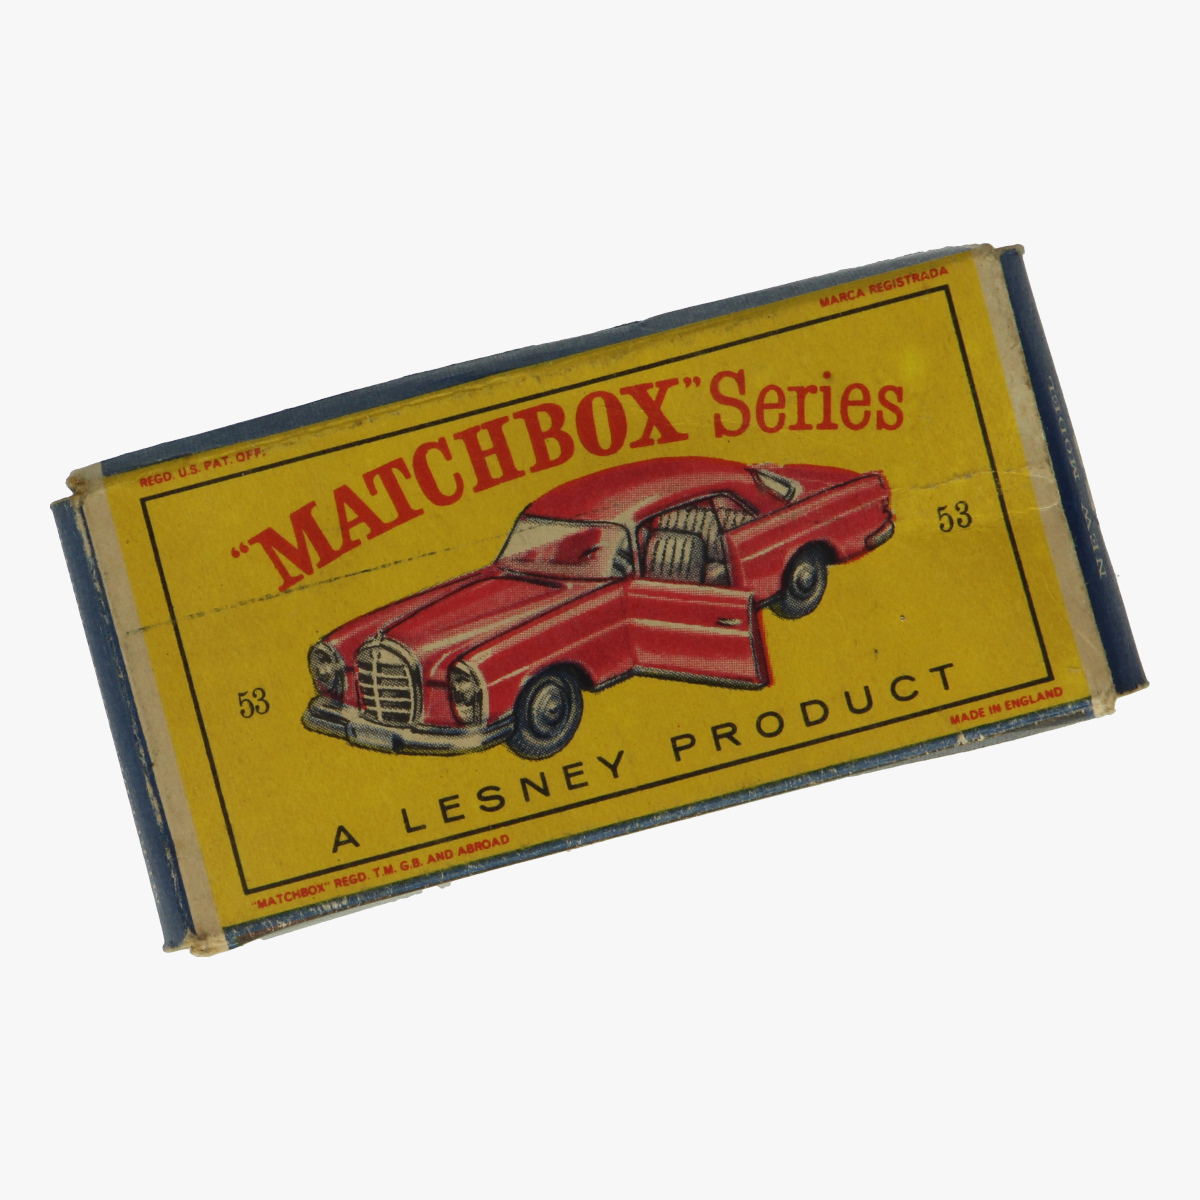 Afbeeldingen van Matchbox doos. New model 53 mercedes-benz coupe 